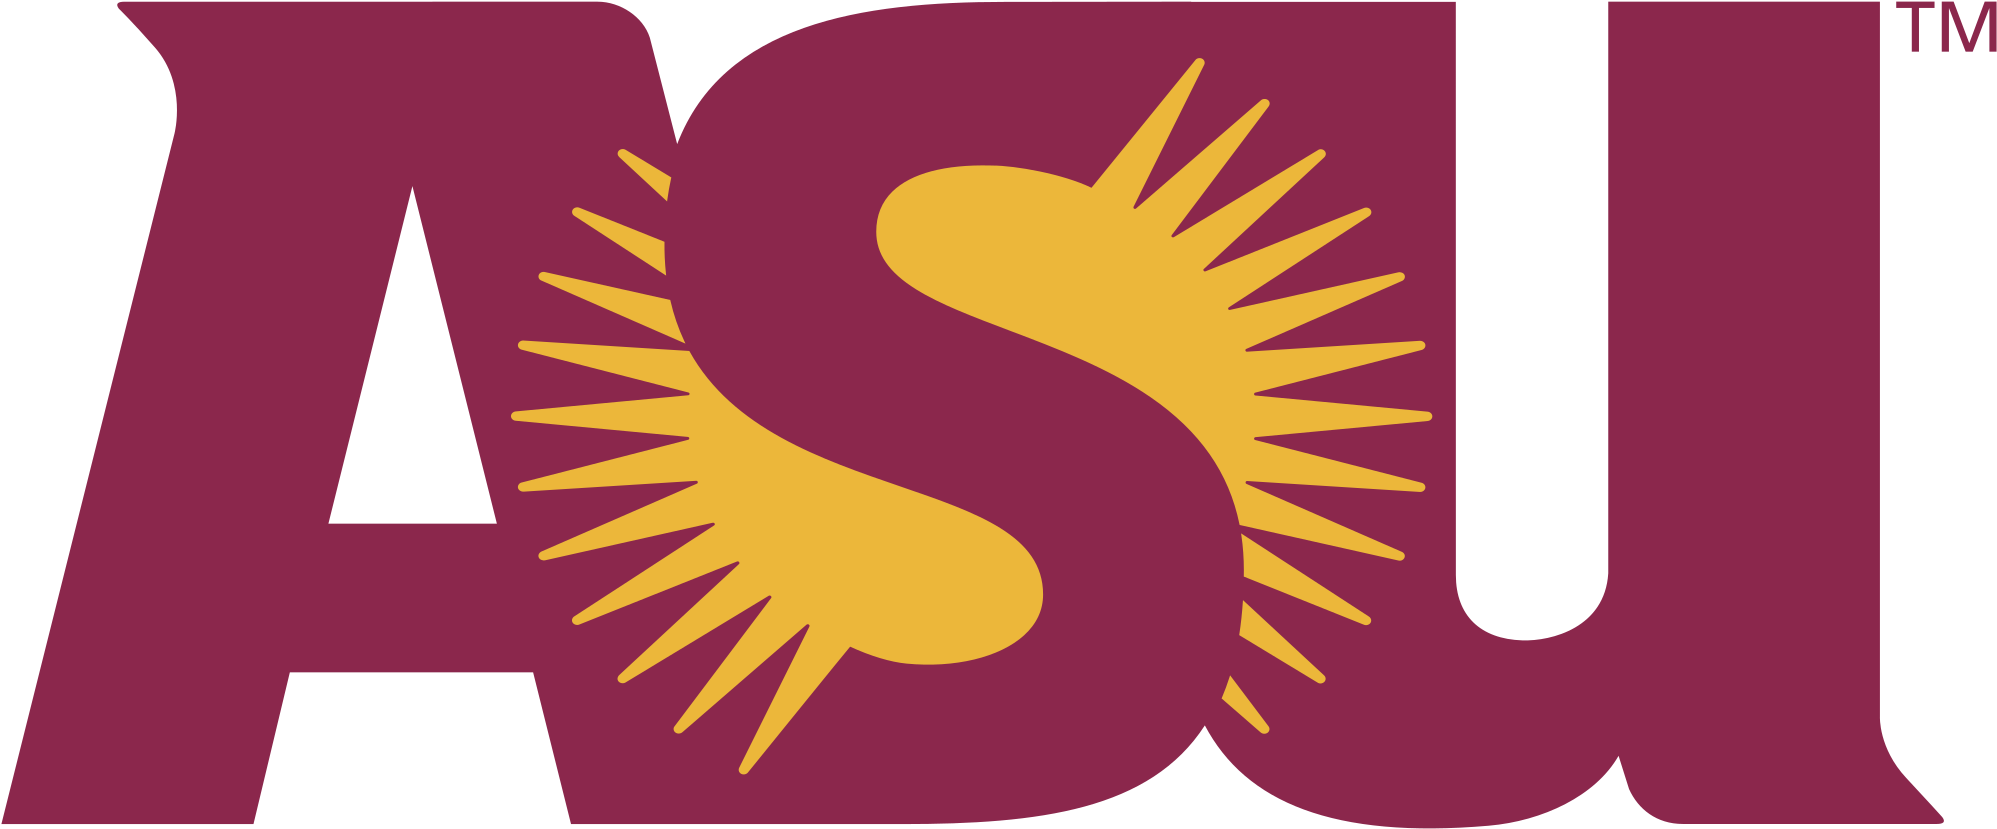 Asu Logo Png Transparent - Arizona State University Online - Free